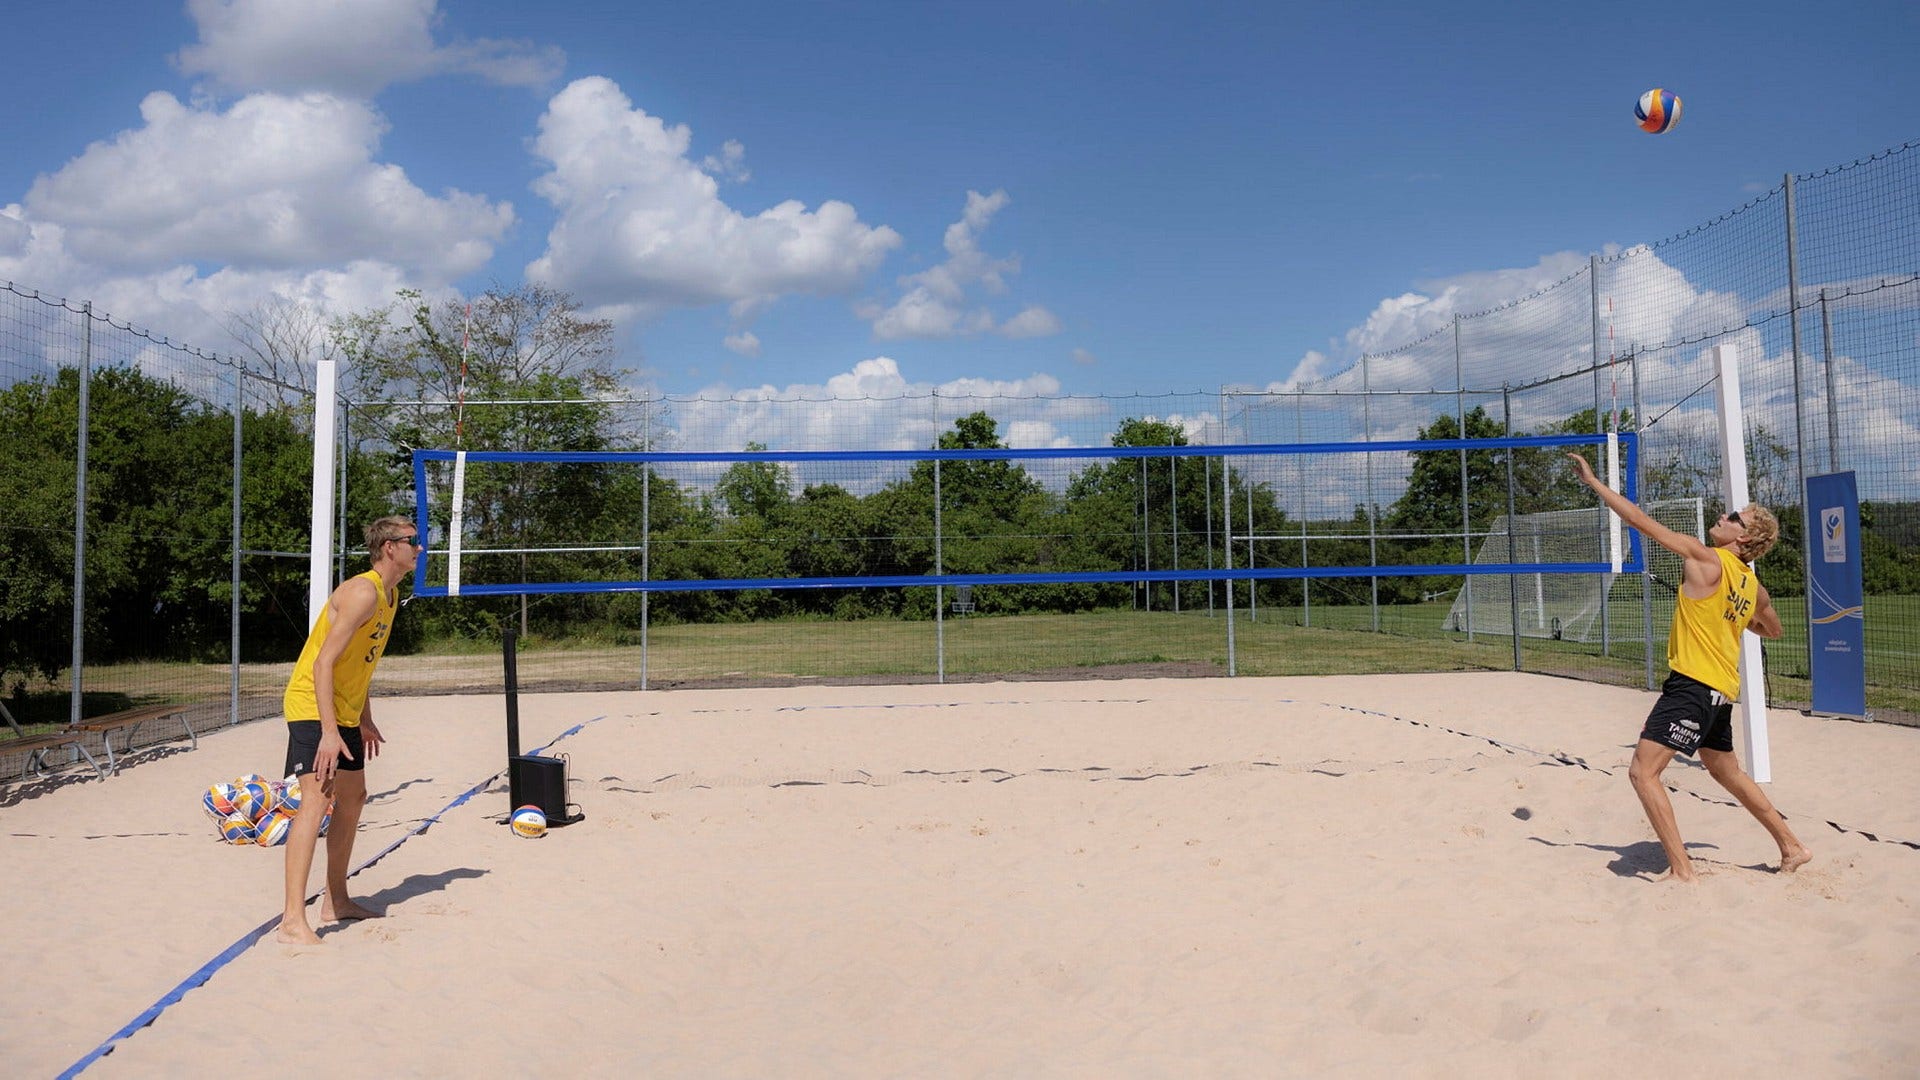 Nuova pista di casa per il saltatore olimpico svedese nel beach volley